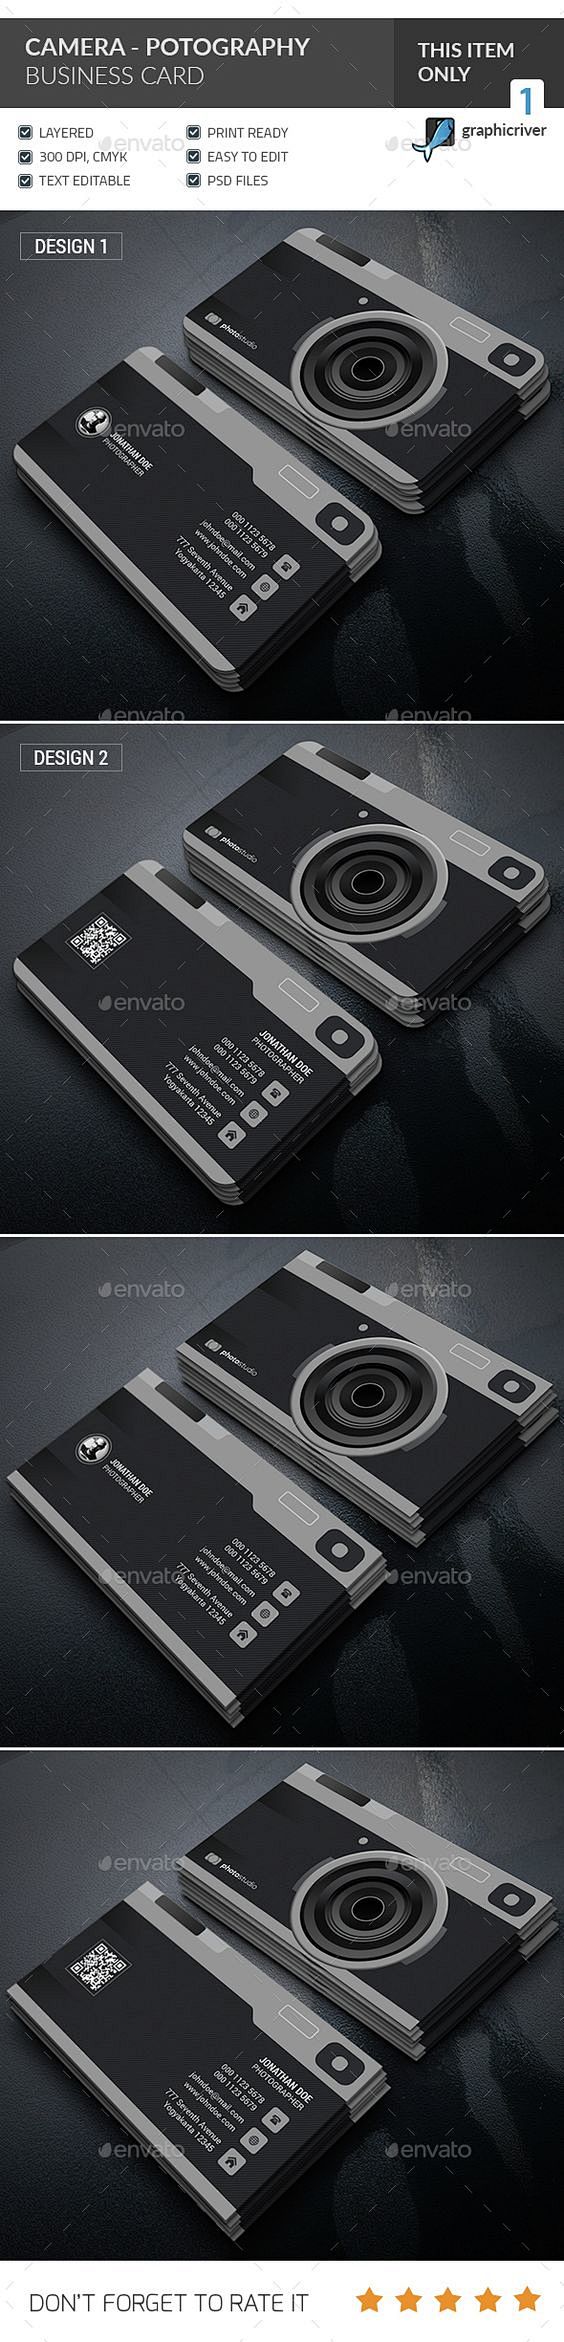 相机 - 摄影名片 -  PSD模板更多